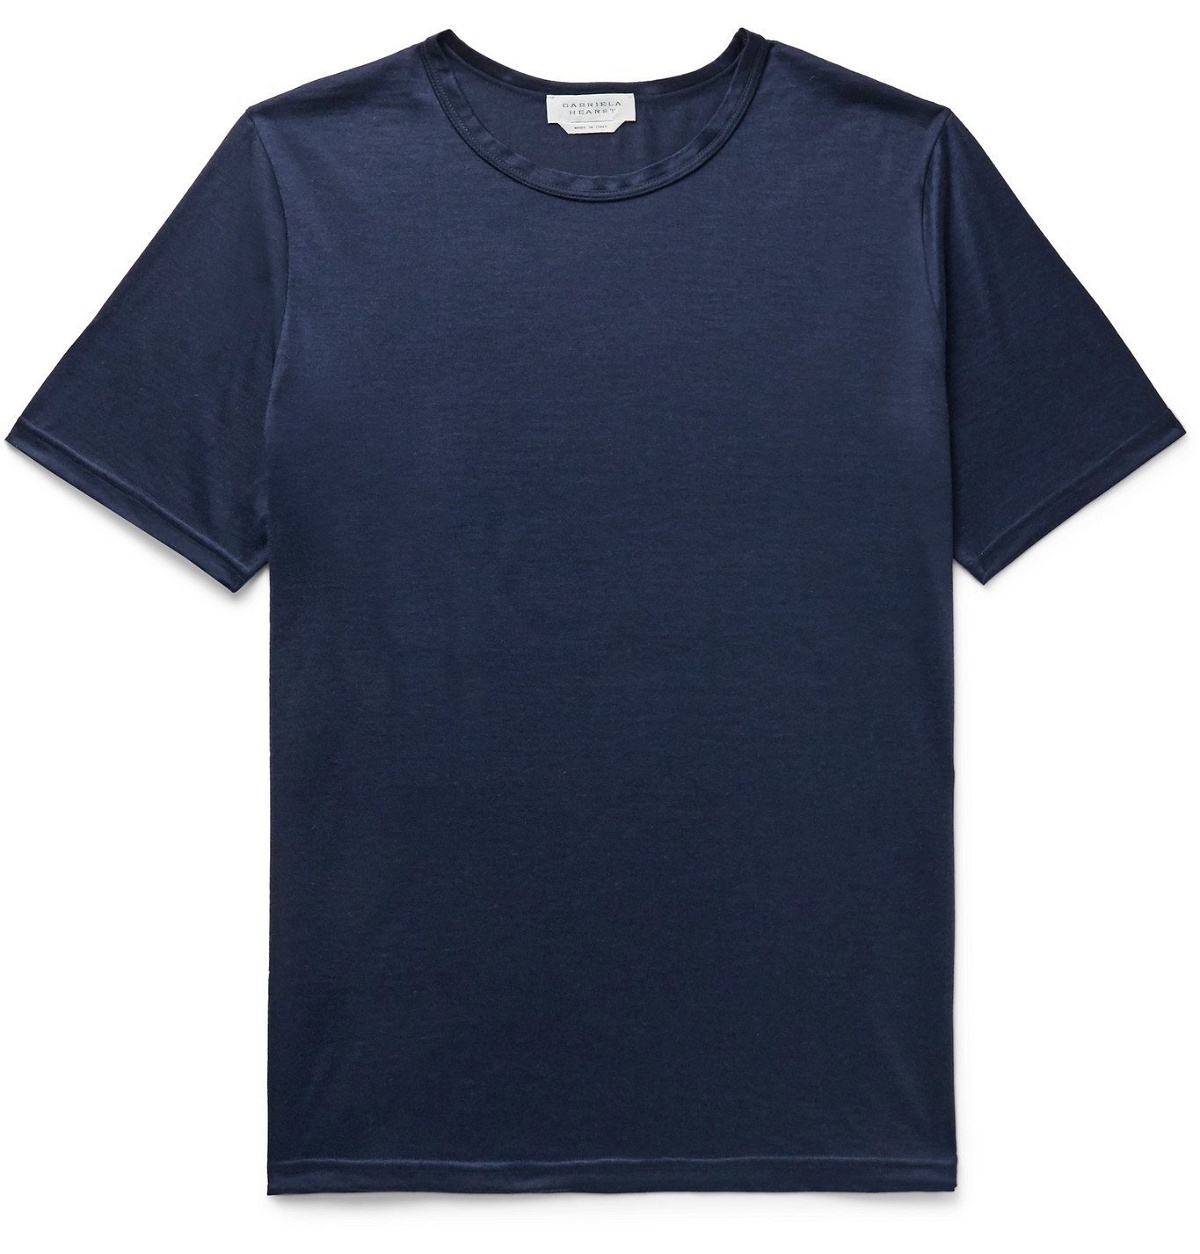 Gabriela Hearst - Bandiera Cashmere T-Shirt - Blue Gabriela Hearst